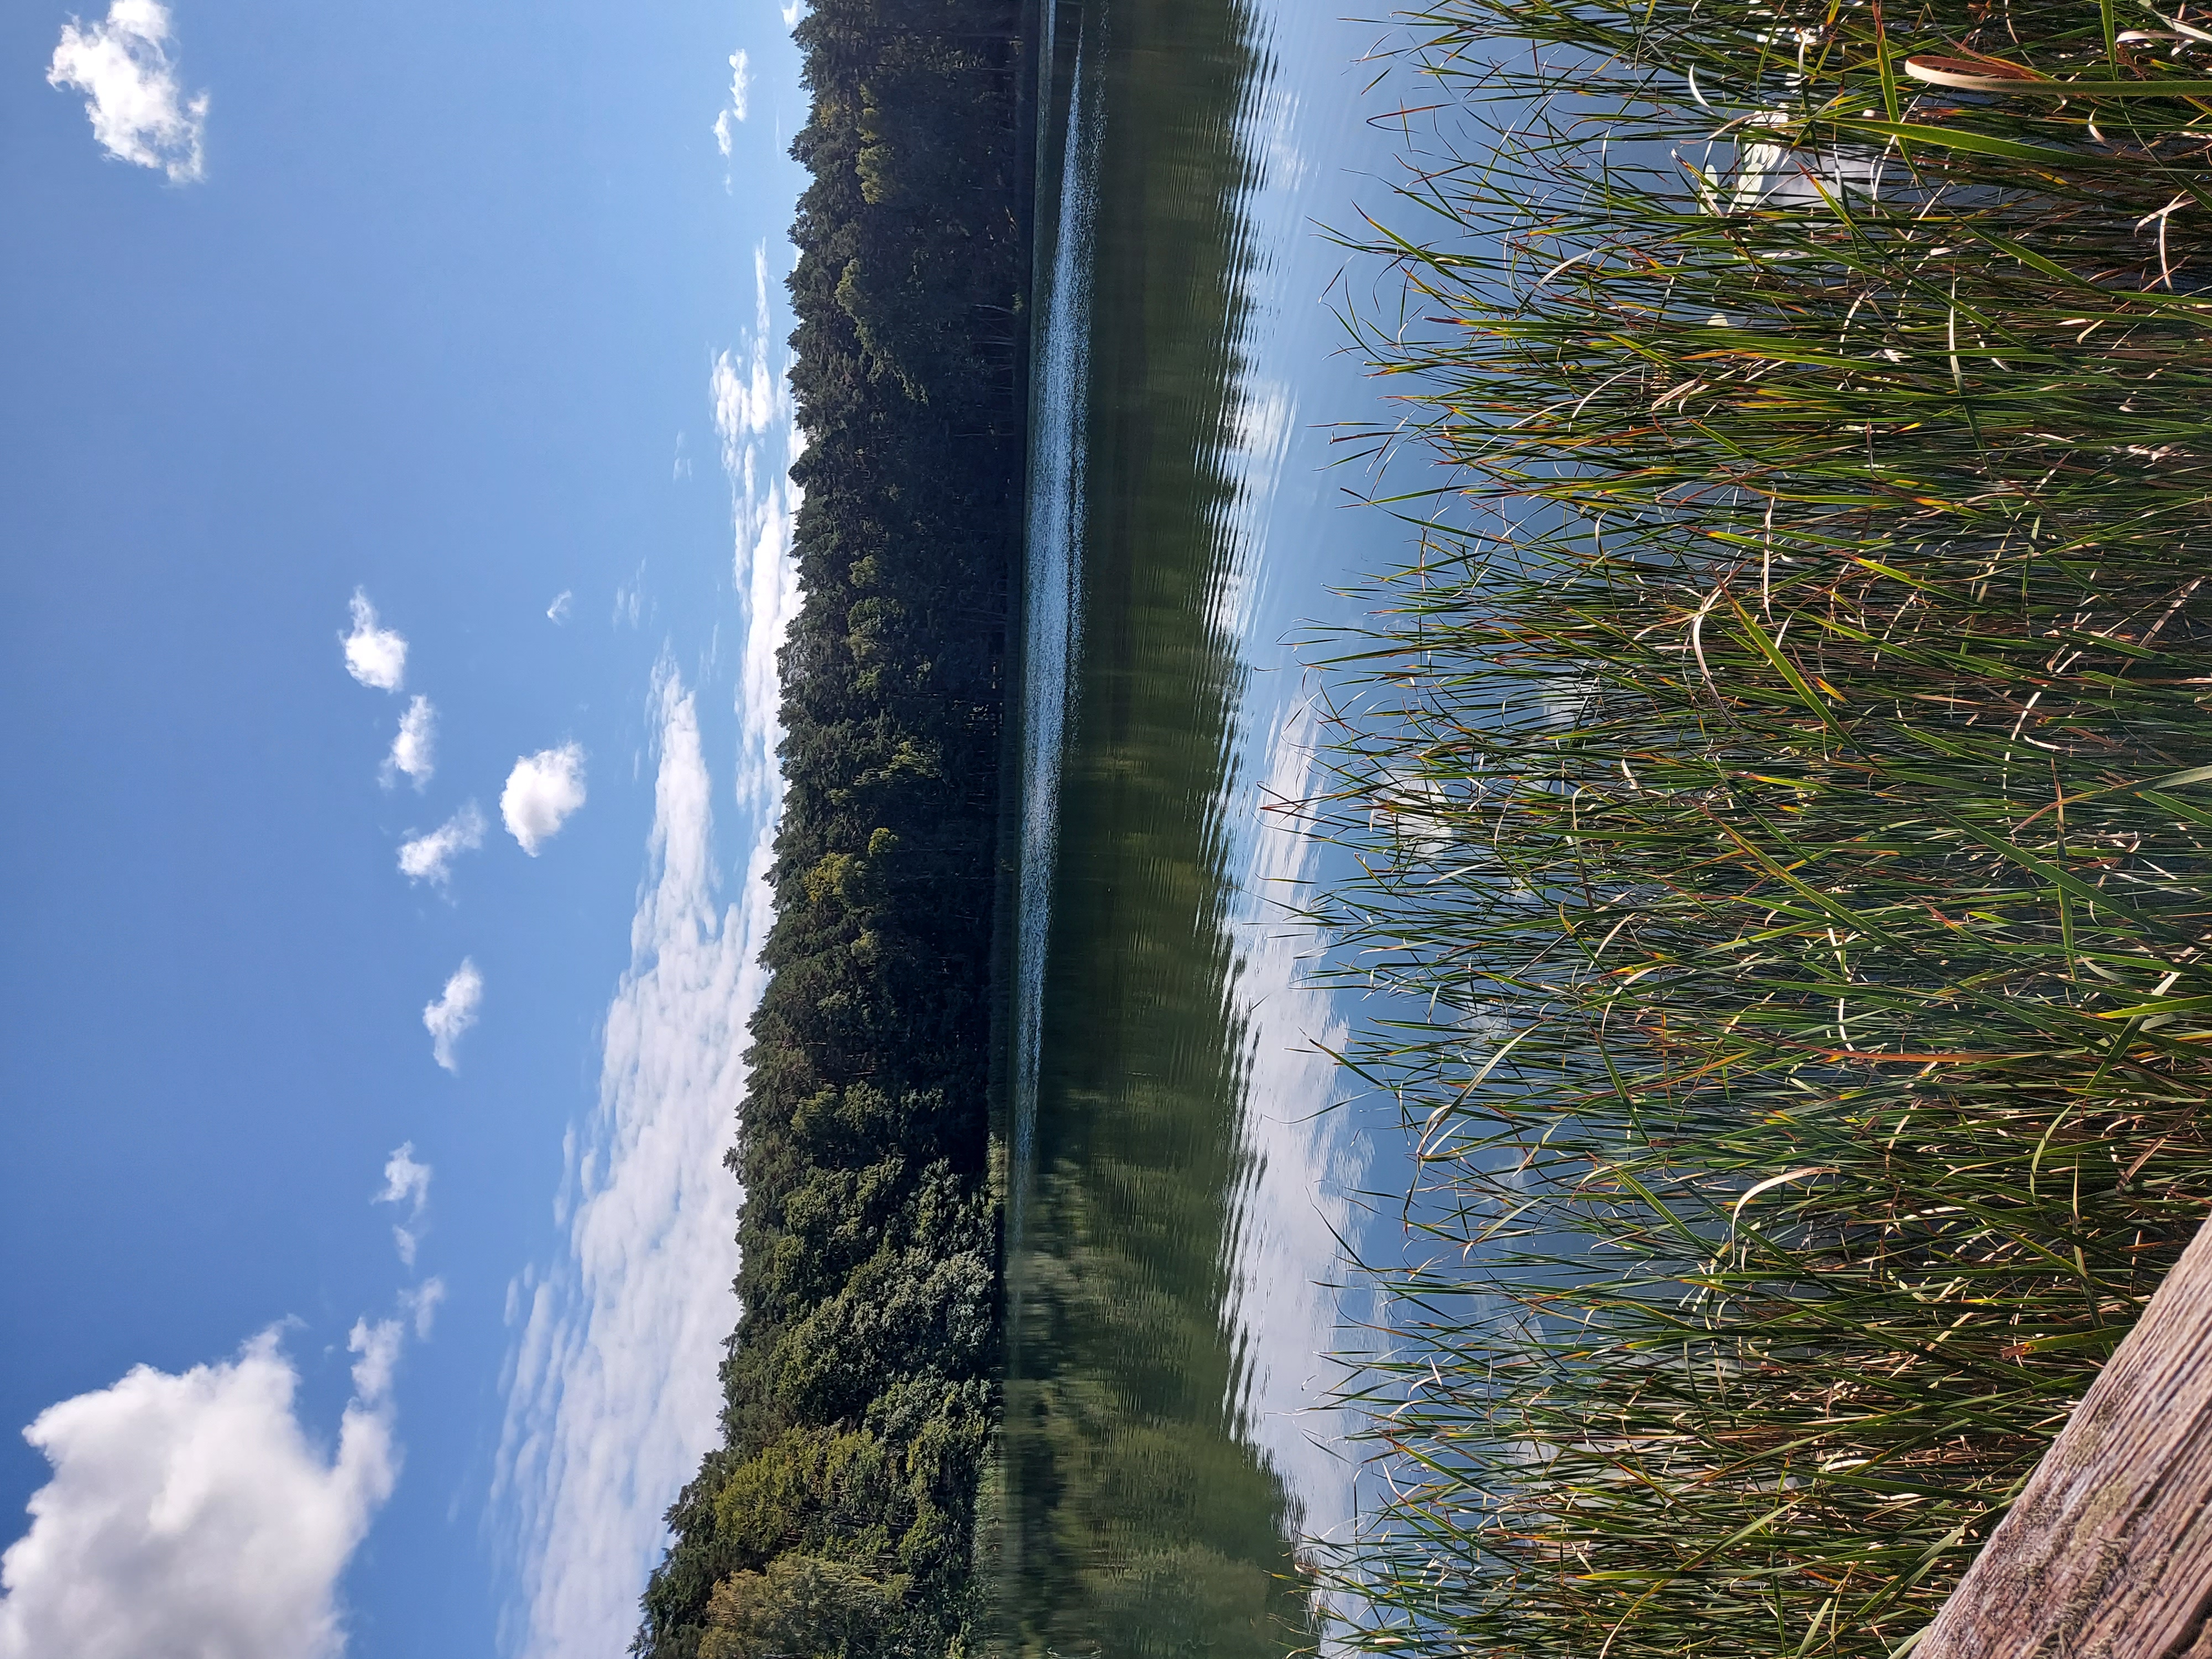 Jezioro z perspektywy pomostu. Na pierwszym planie trawy, na drugim planie las otaczający jezioro